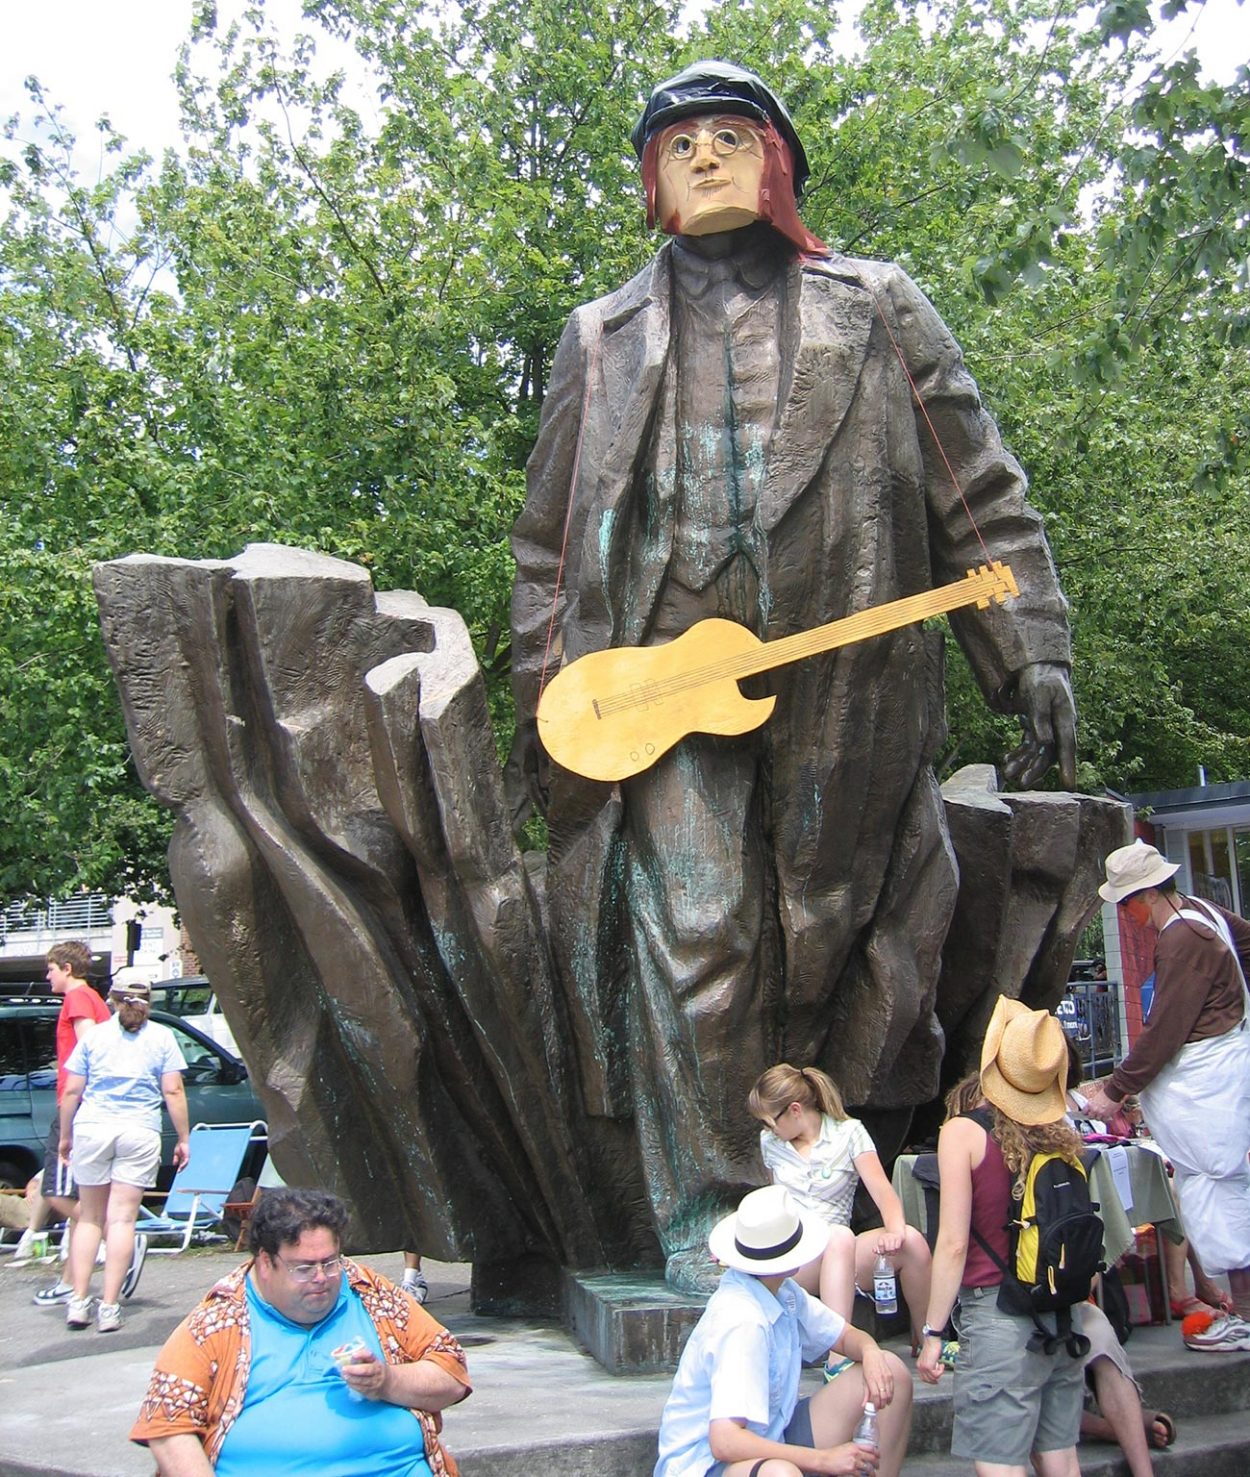 Статуя Ленина в Сиэтле